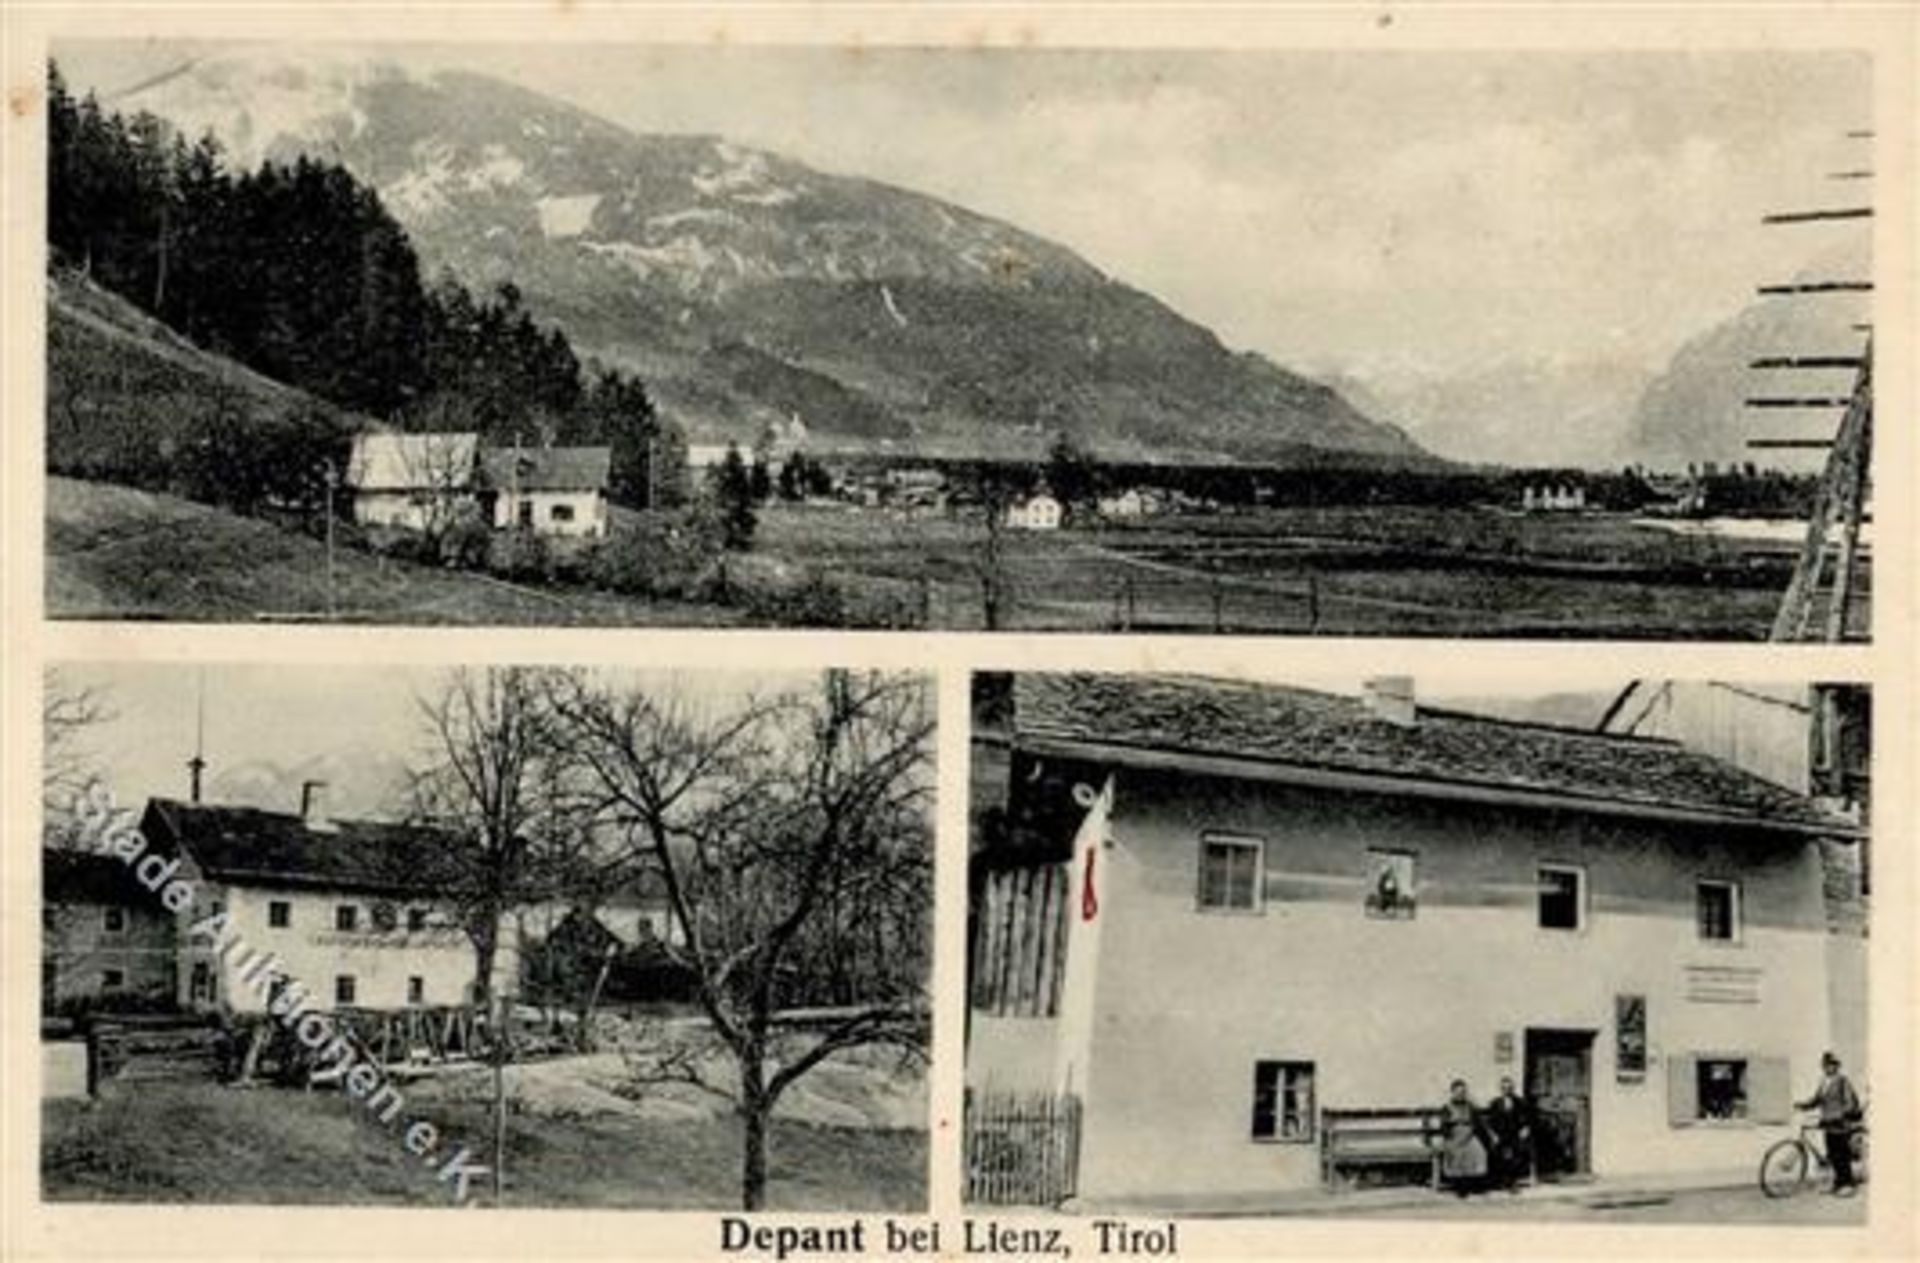 DEPANT bei Lienz,Tirol (Österreich) - Gemischtwarenhandlung Anton Hofer I-IIDieses Los wird in einer